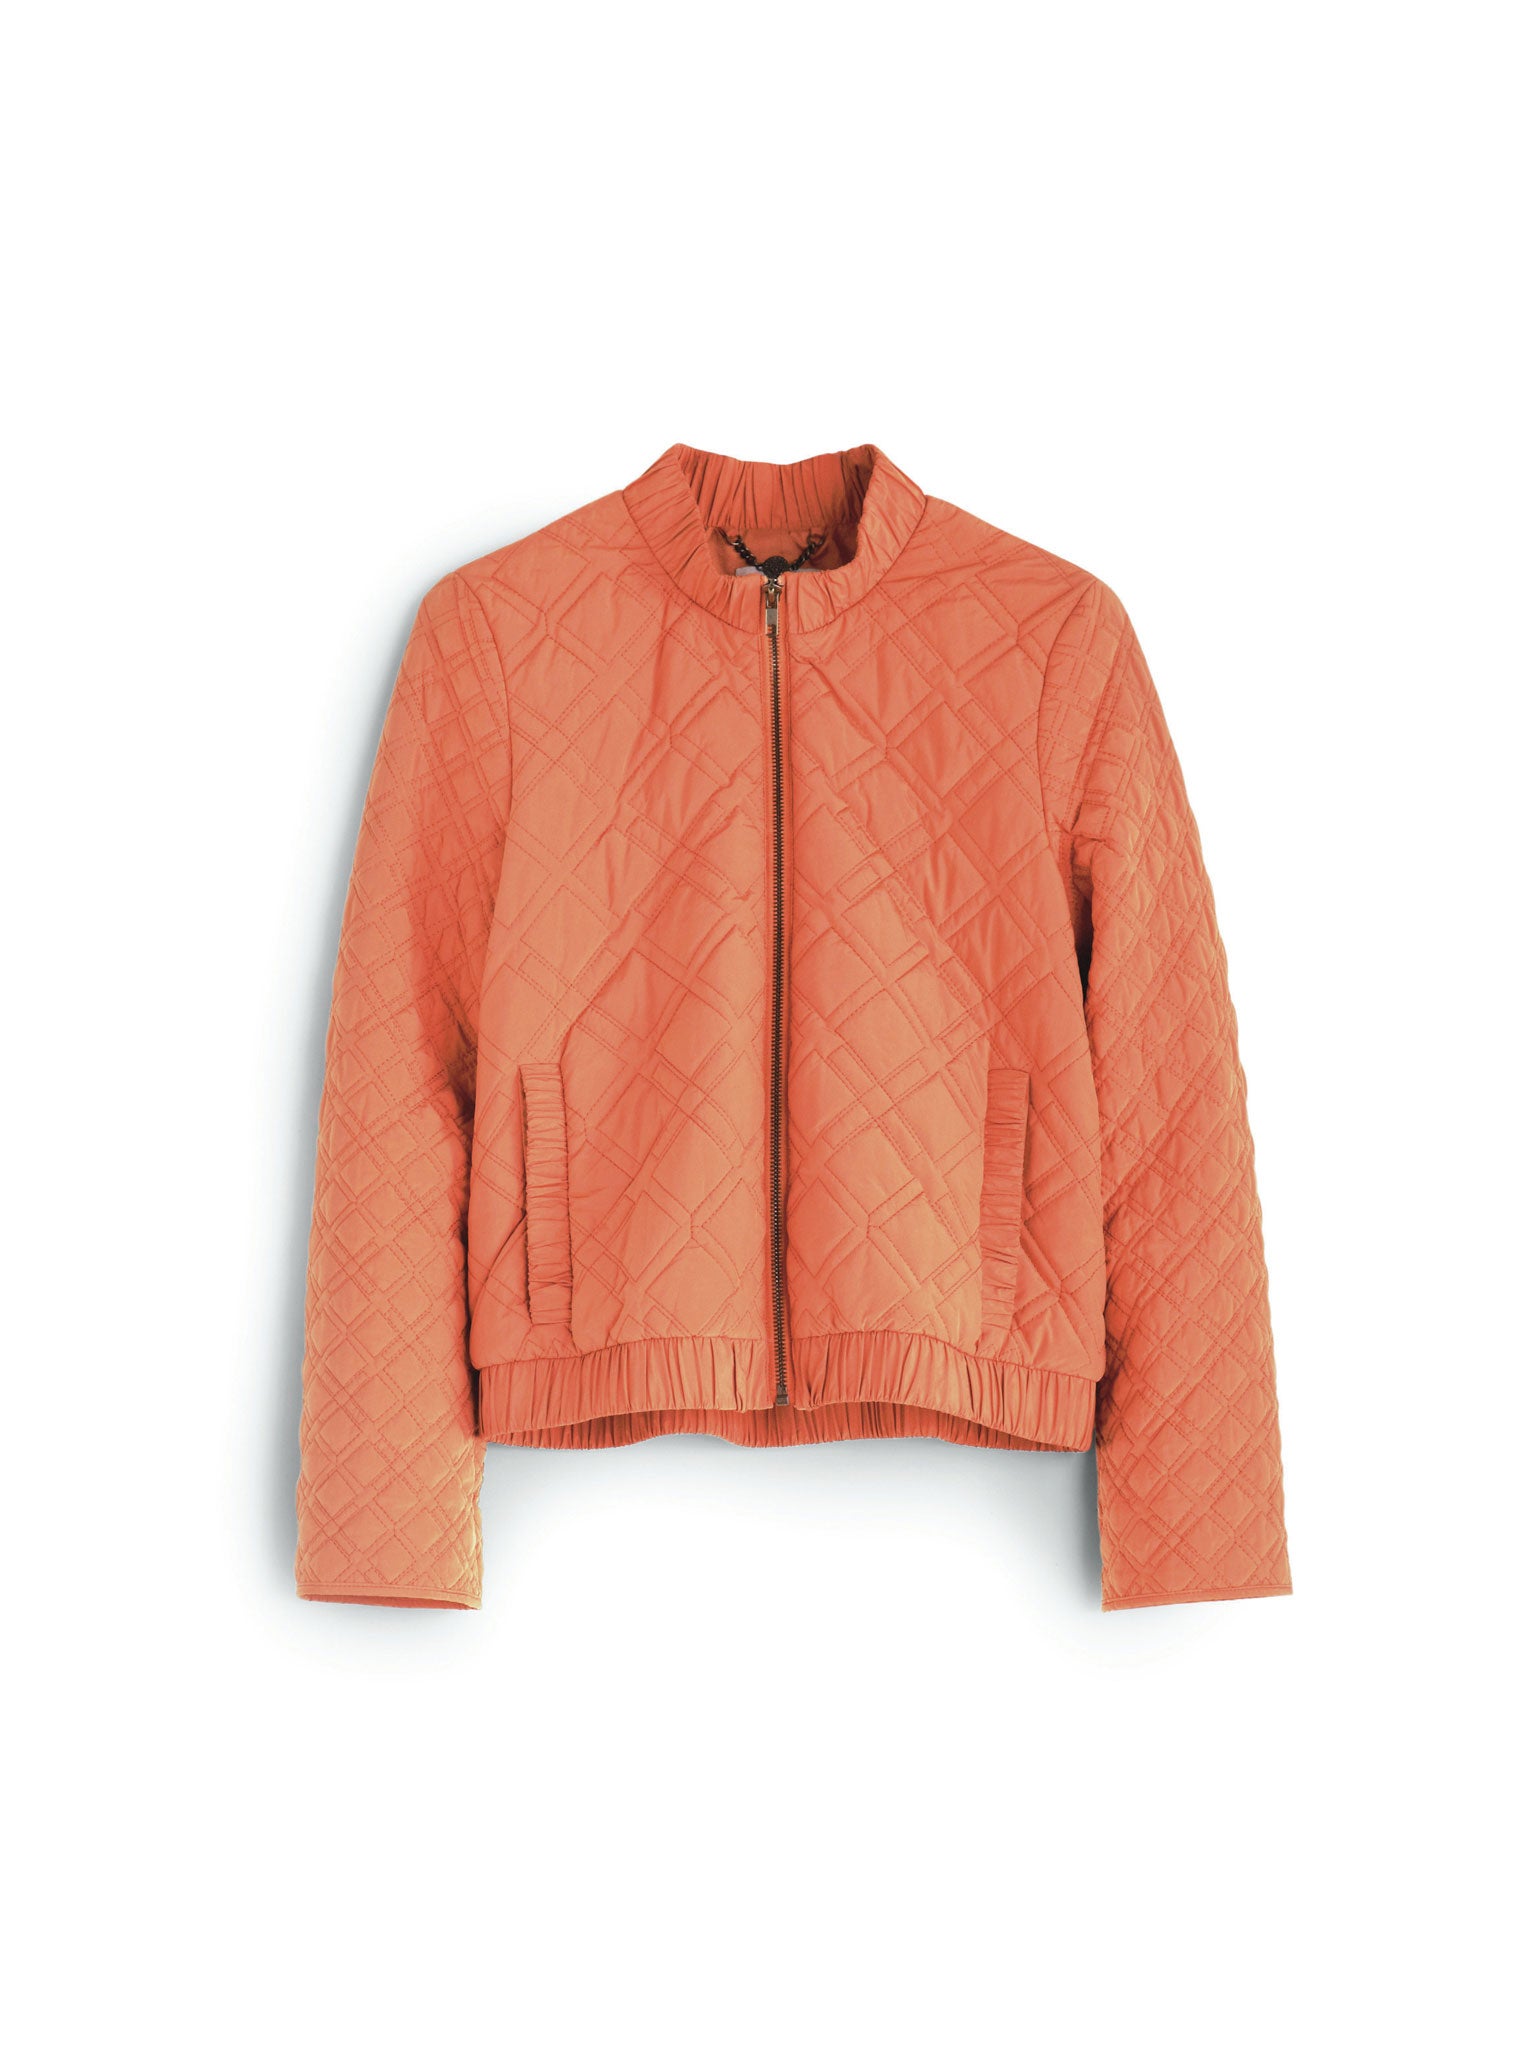 Peachy: Hobbs quilted jacket, £129, hobbs.co.uk